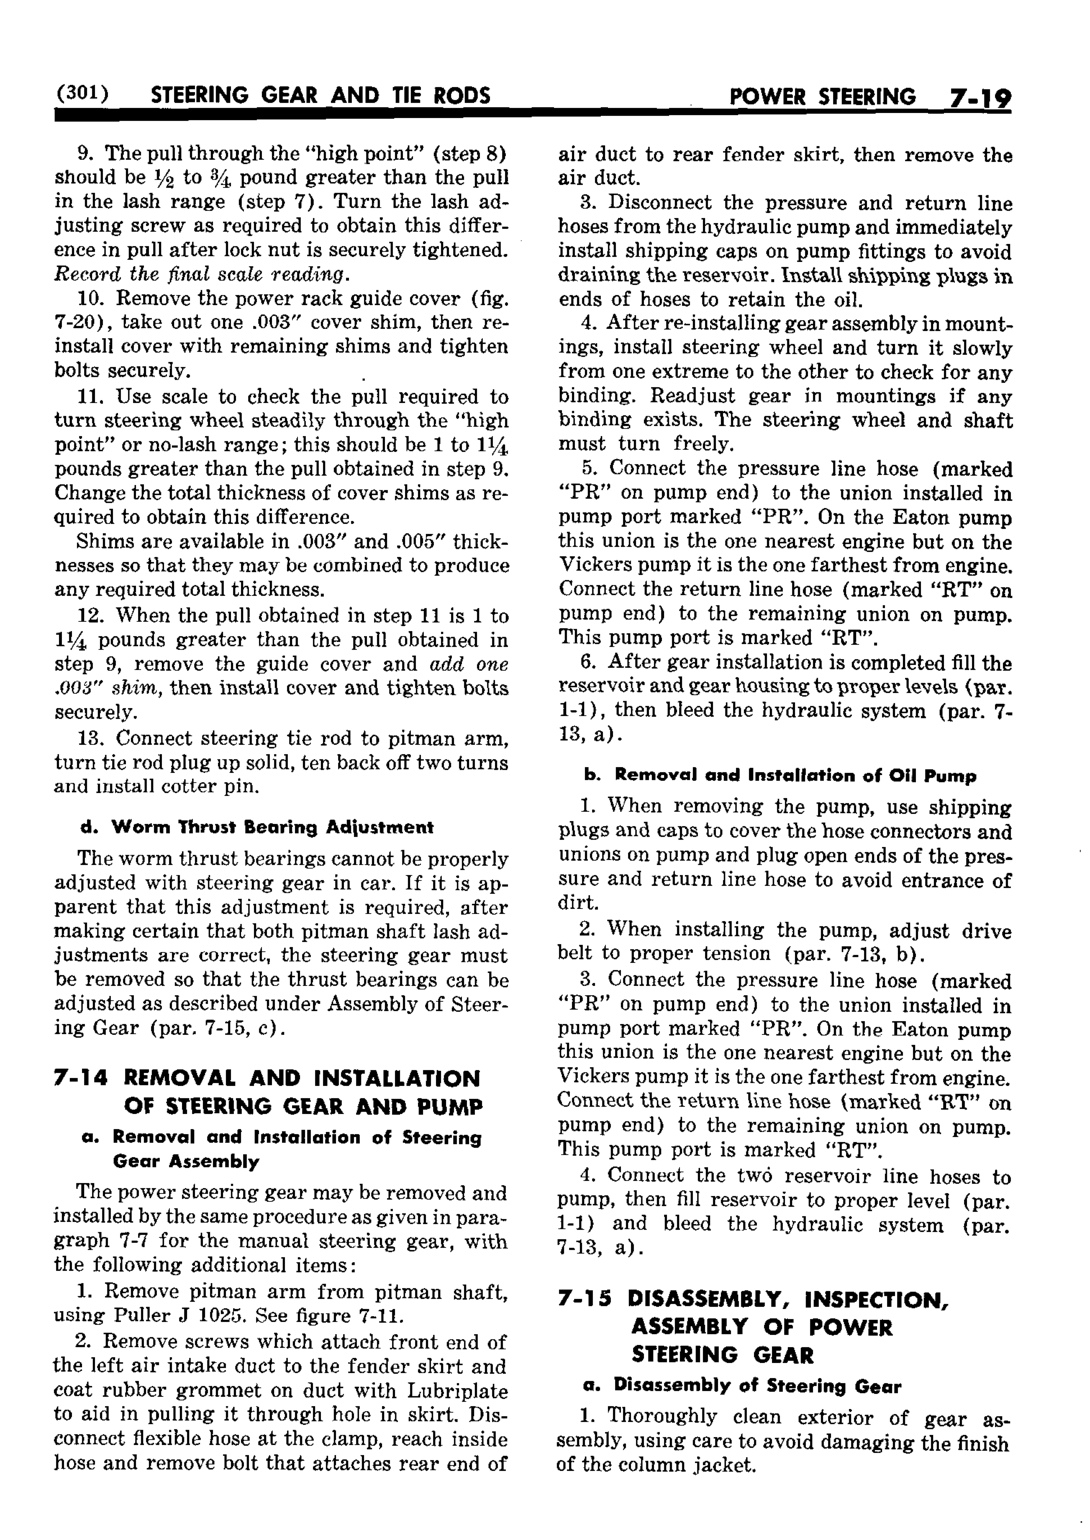 n_08 1952 Buick Shop Manual - Steering-019-019.jpg